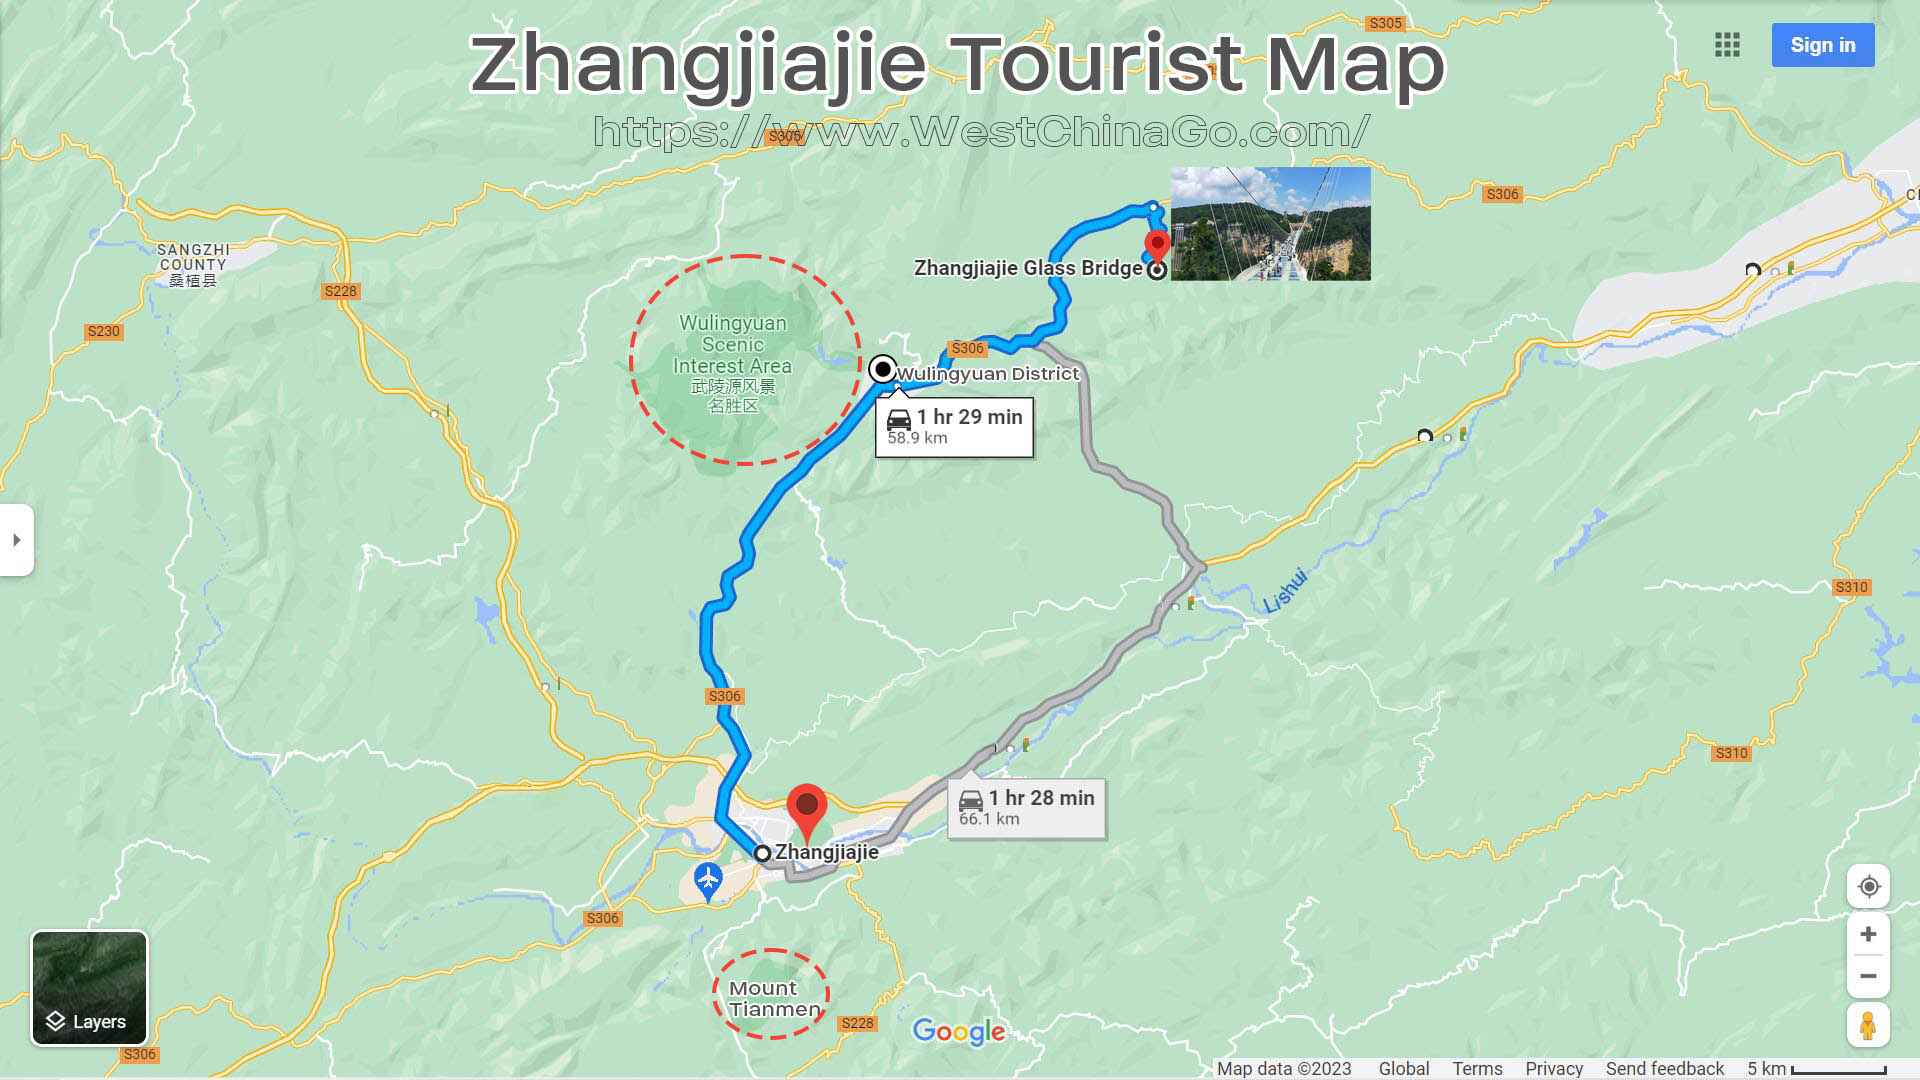 Zhangjiajie Glass Bridge Tourist Map